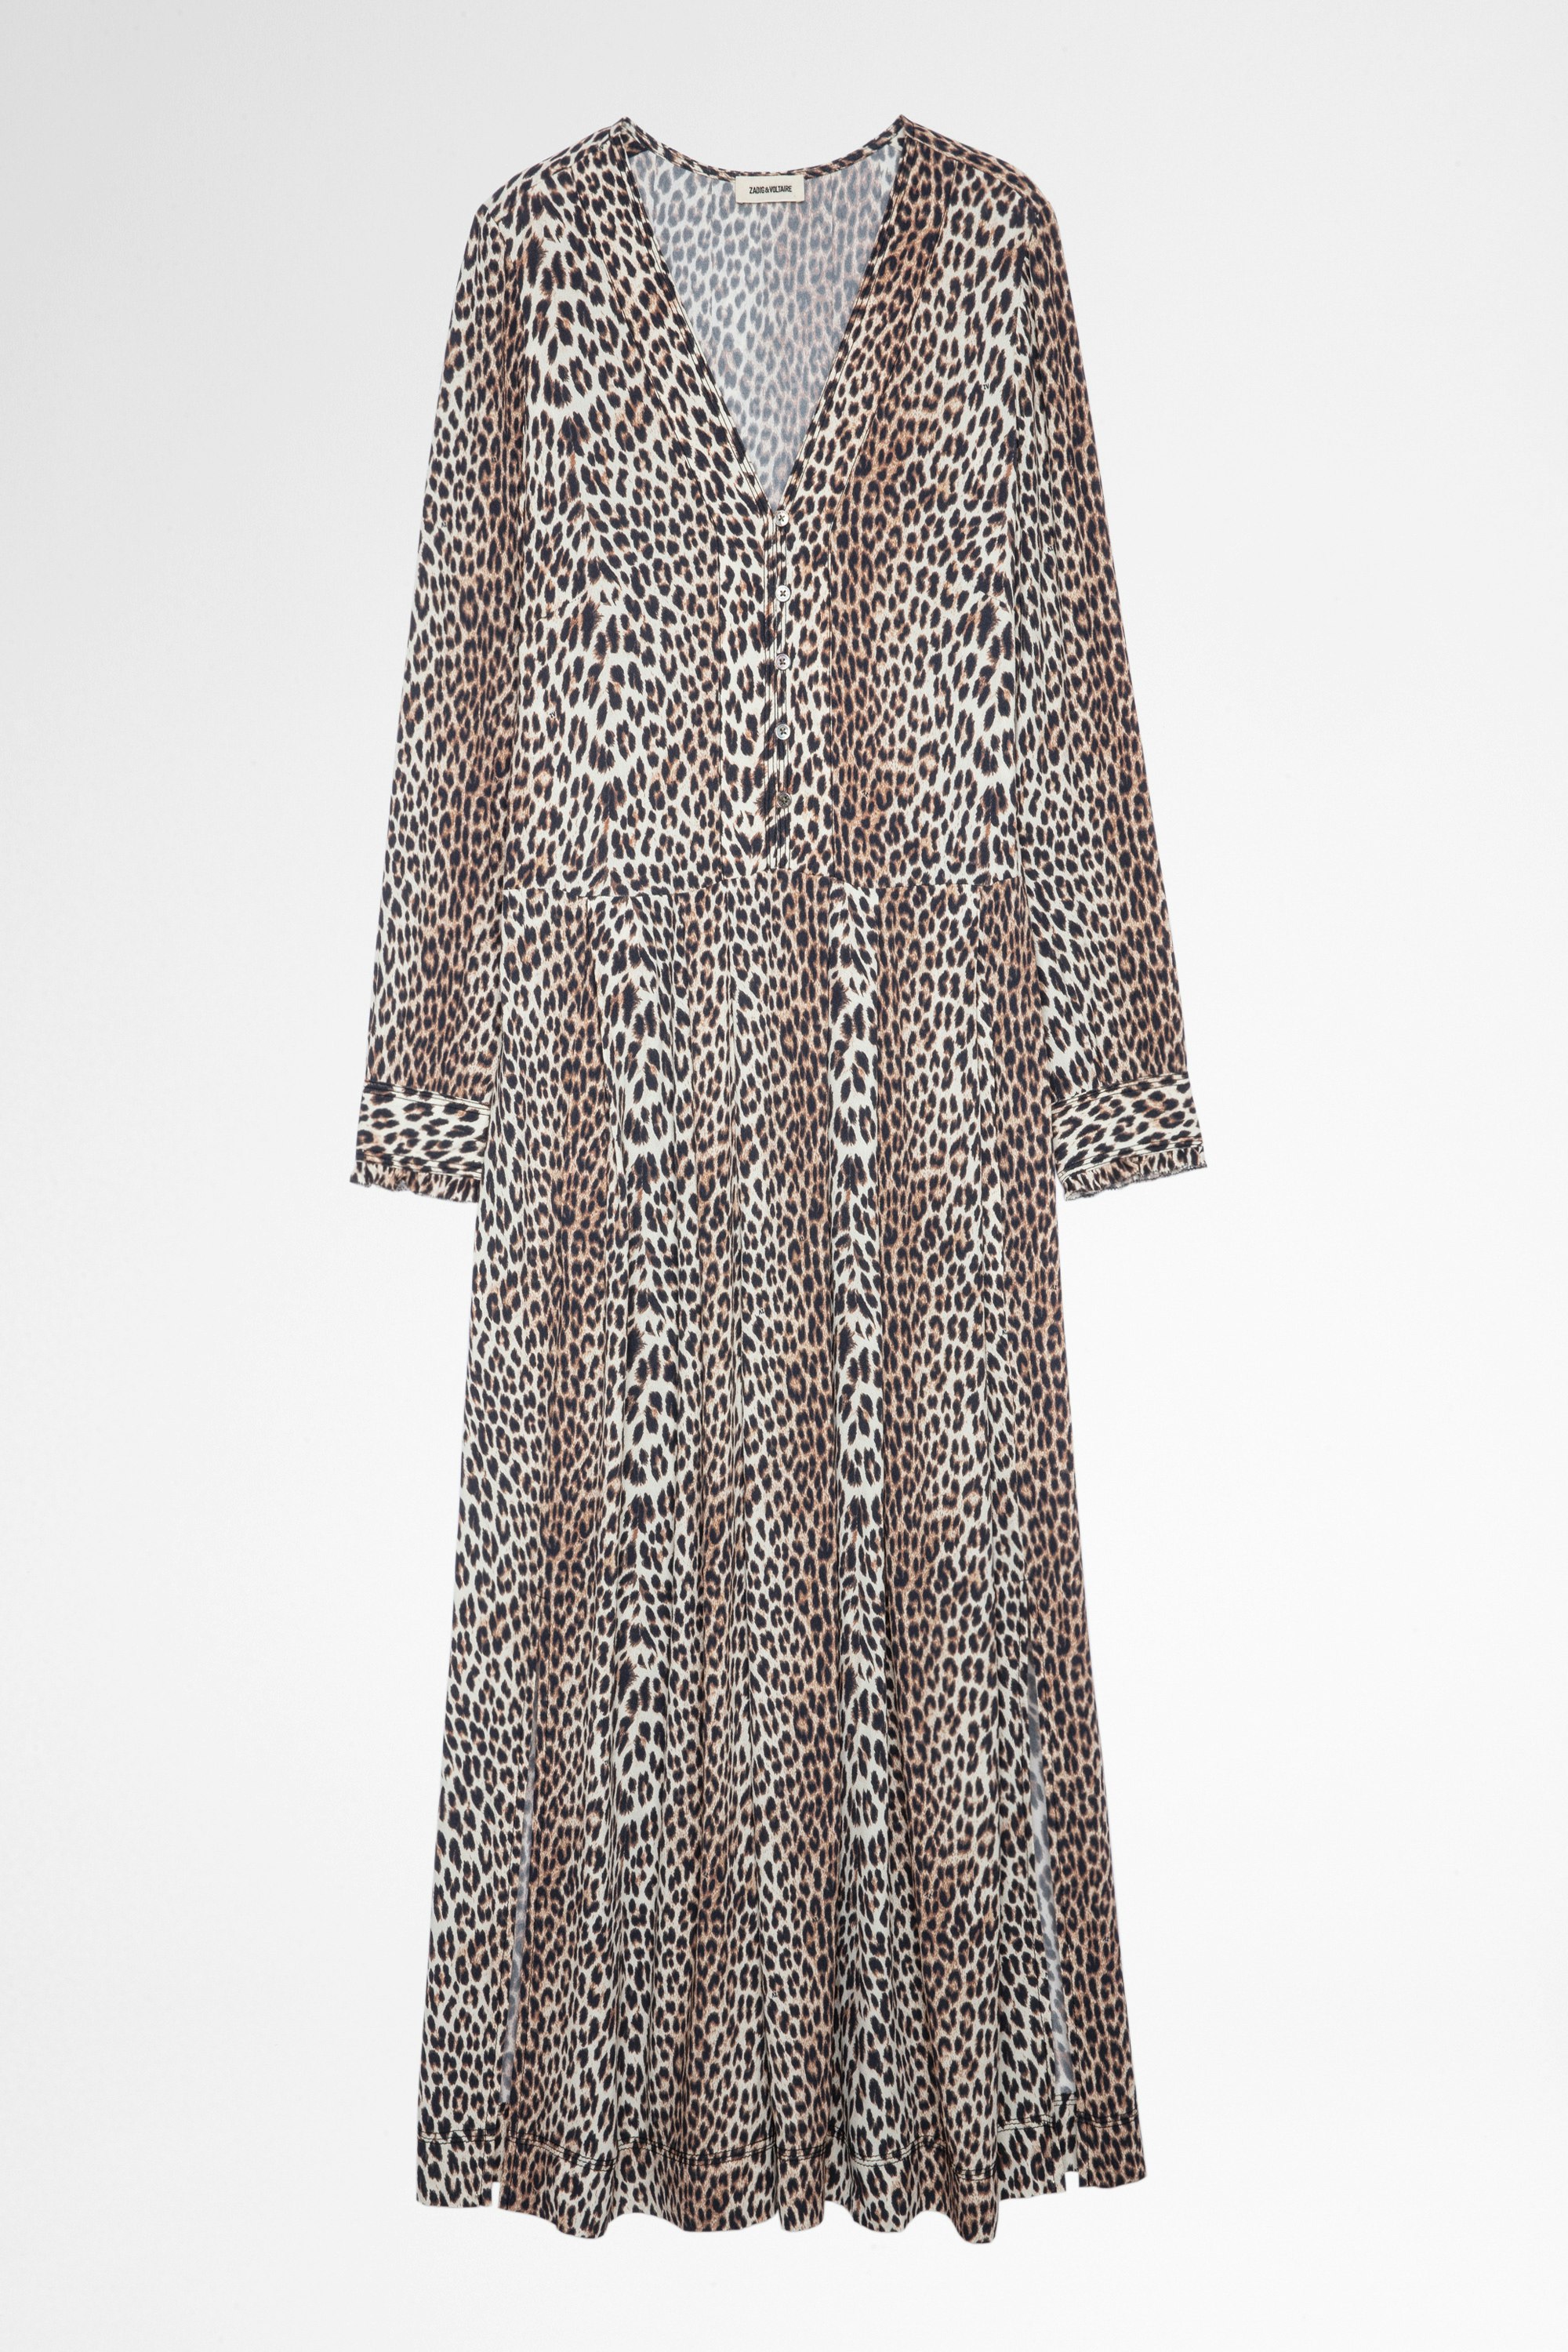 Vestido Roux Leopard Vestido largo con estampado de leopardo para mujer.